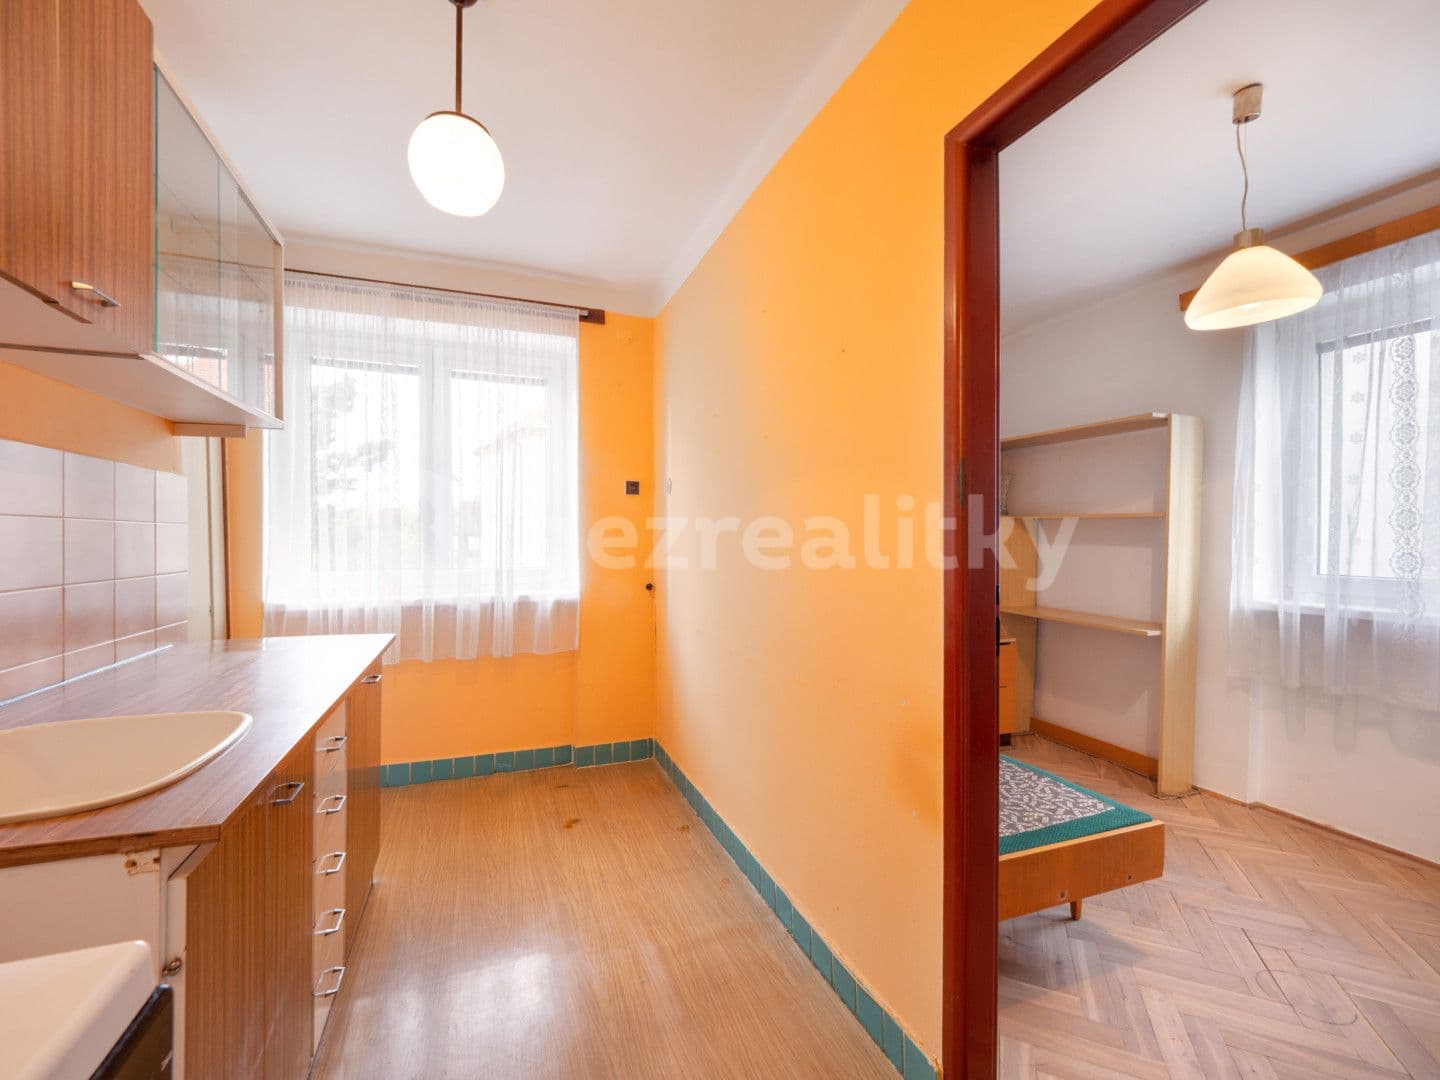 3 bedroom flat for sale, 60 m², Ke zvonici, Prague, Prague